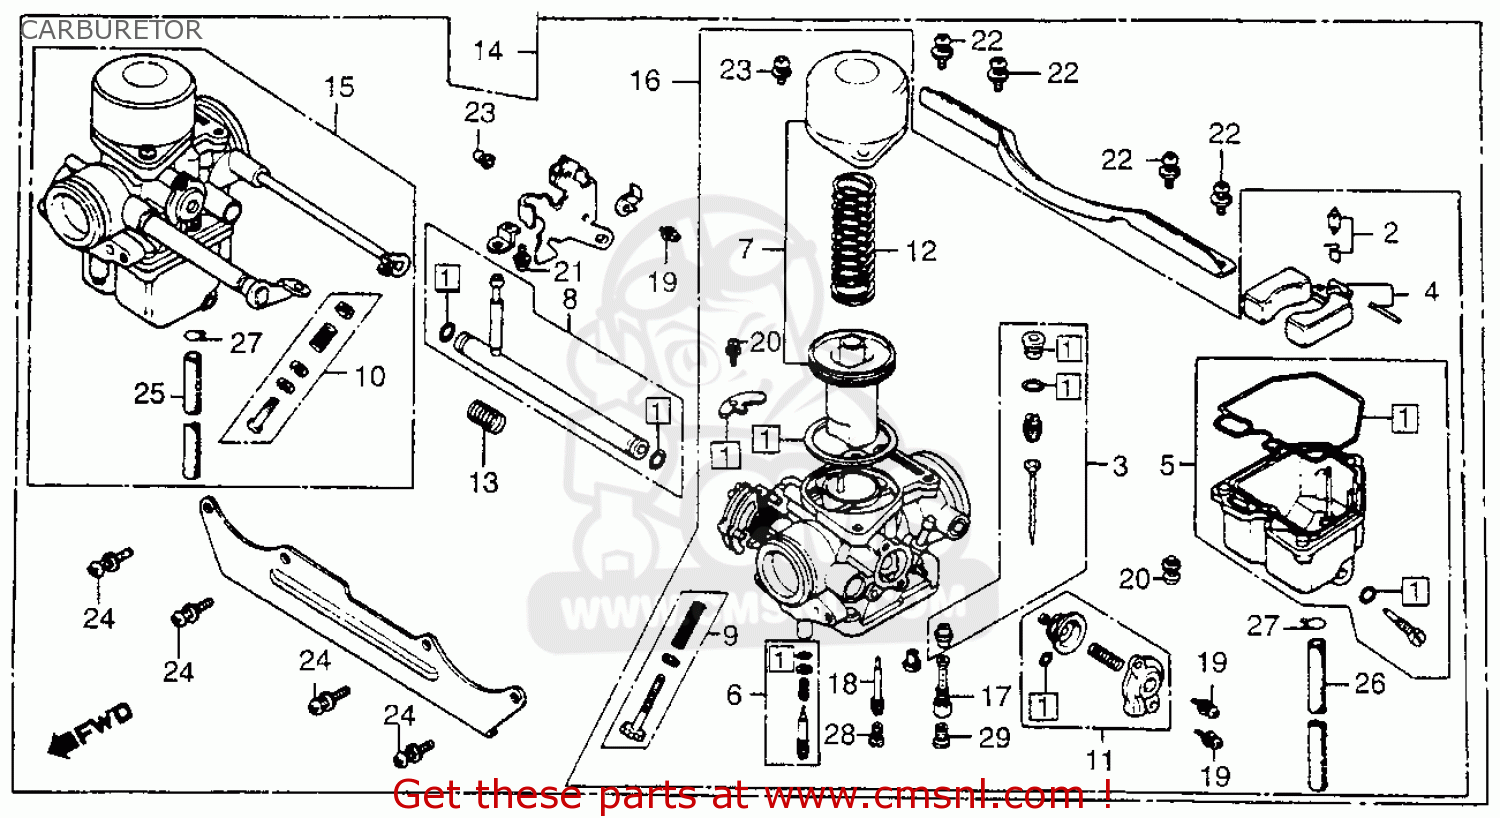 Réfection carburateur - HondaCX.com